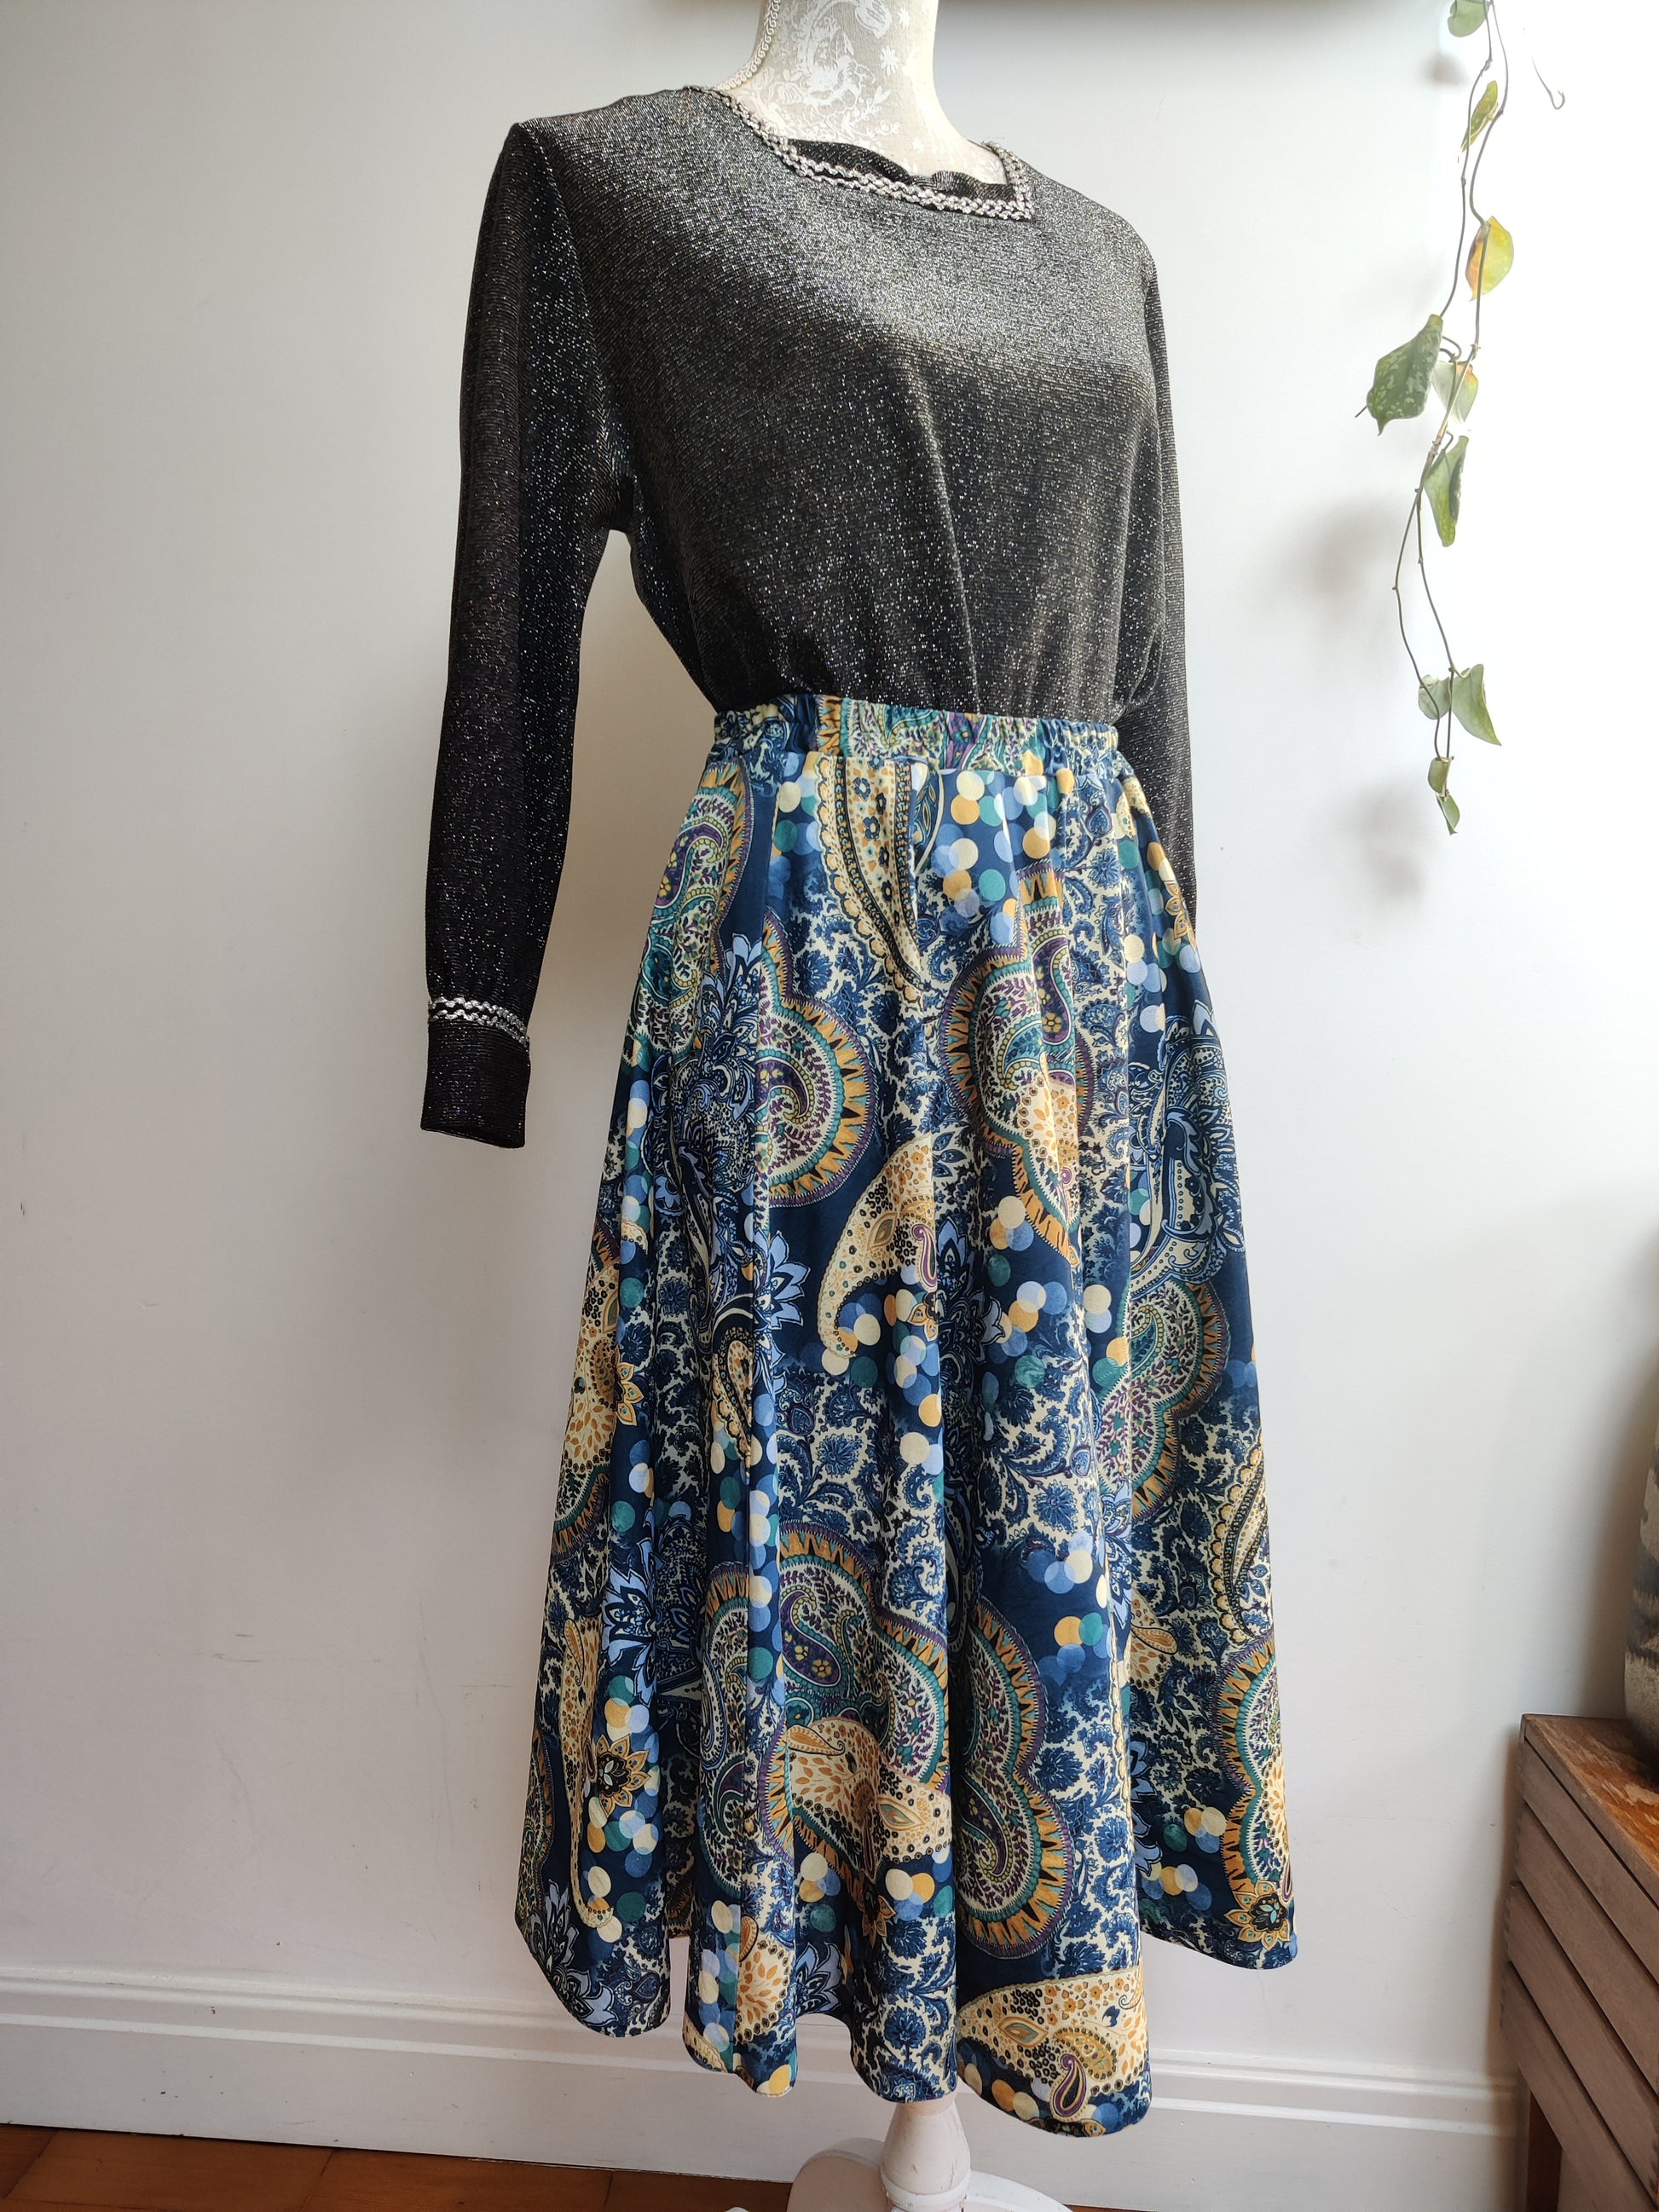 70s paisley full skirt. Size 16